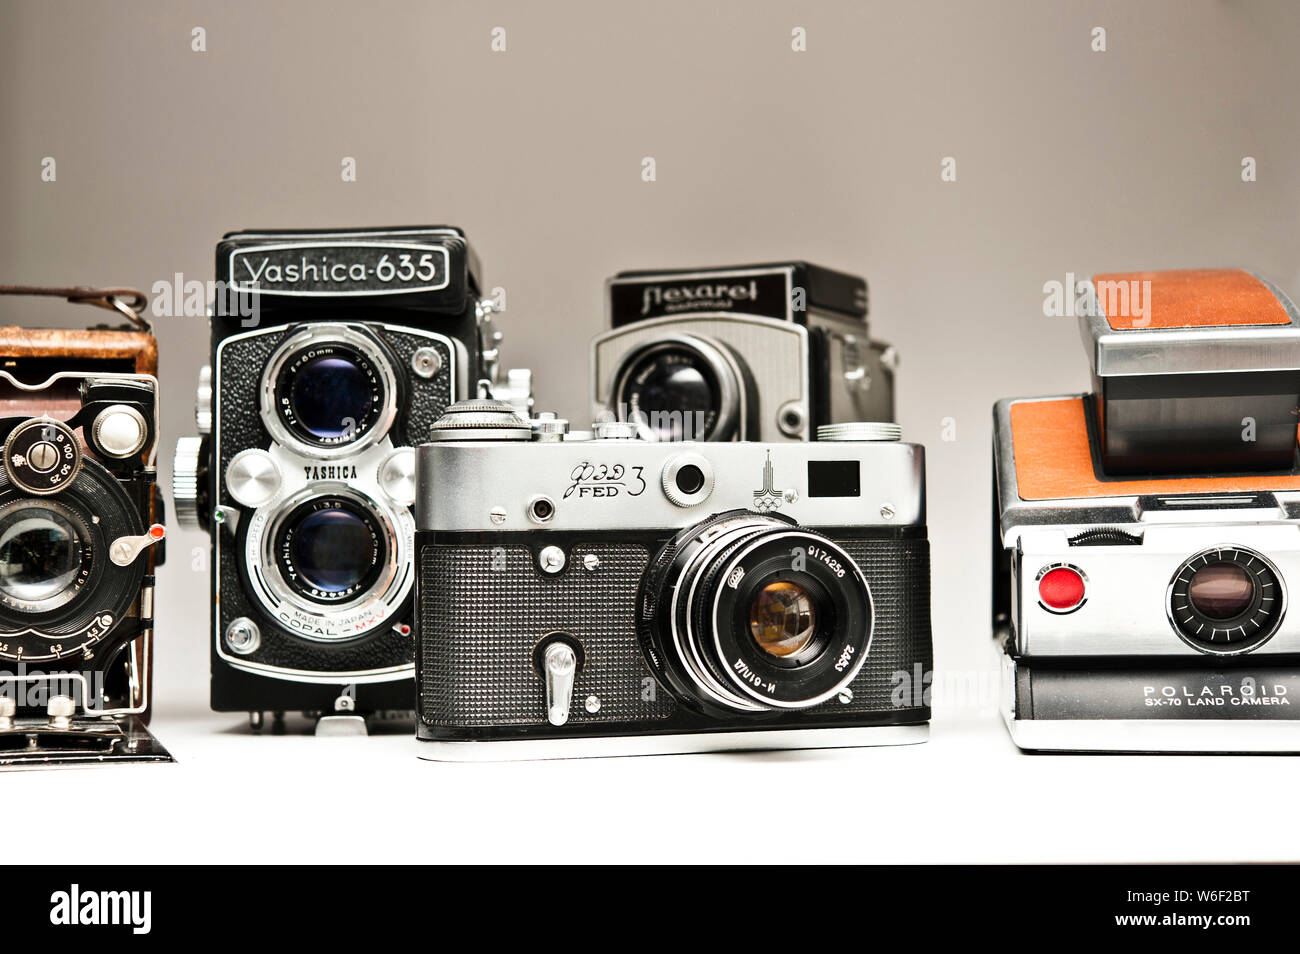 Divers appareil photo vintage sur l'affichage Banque D'Images